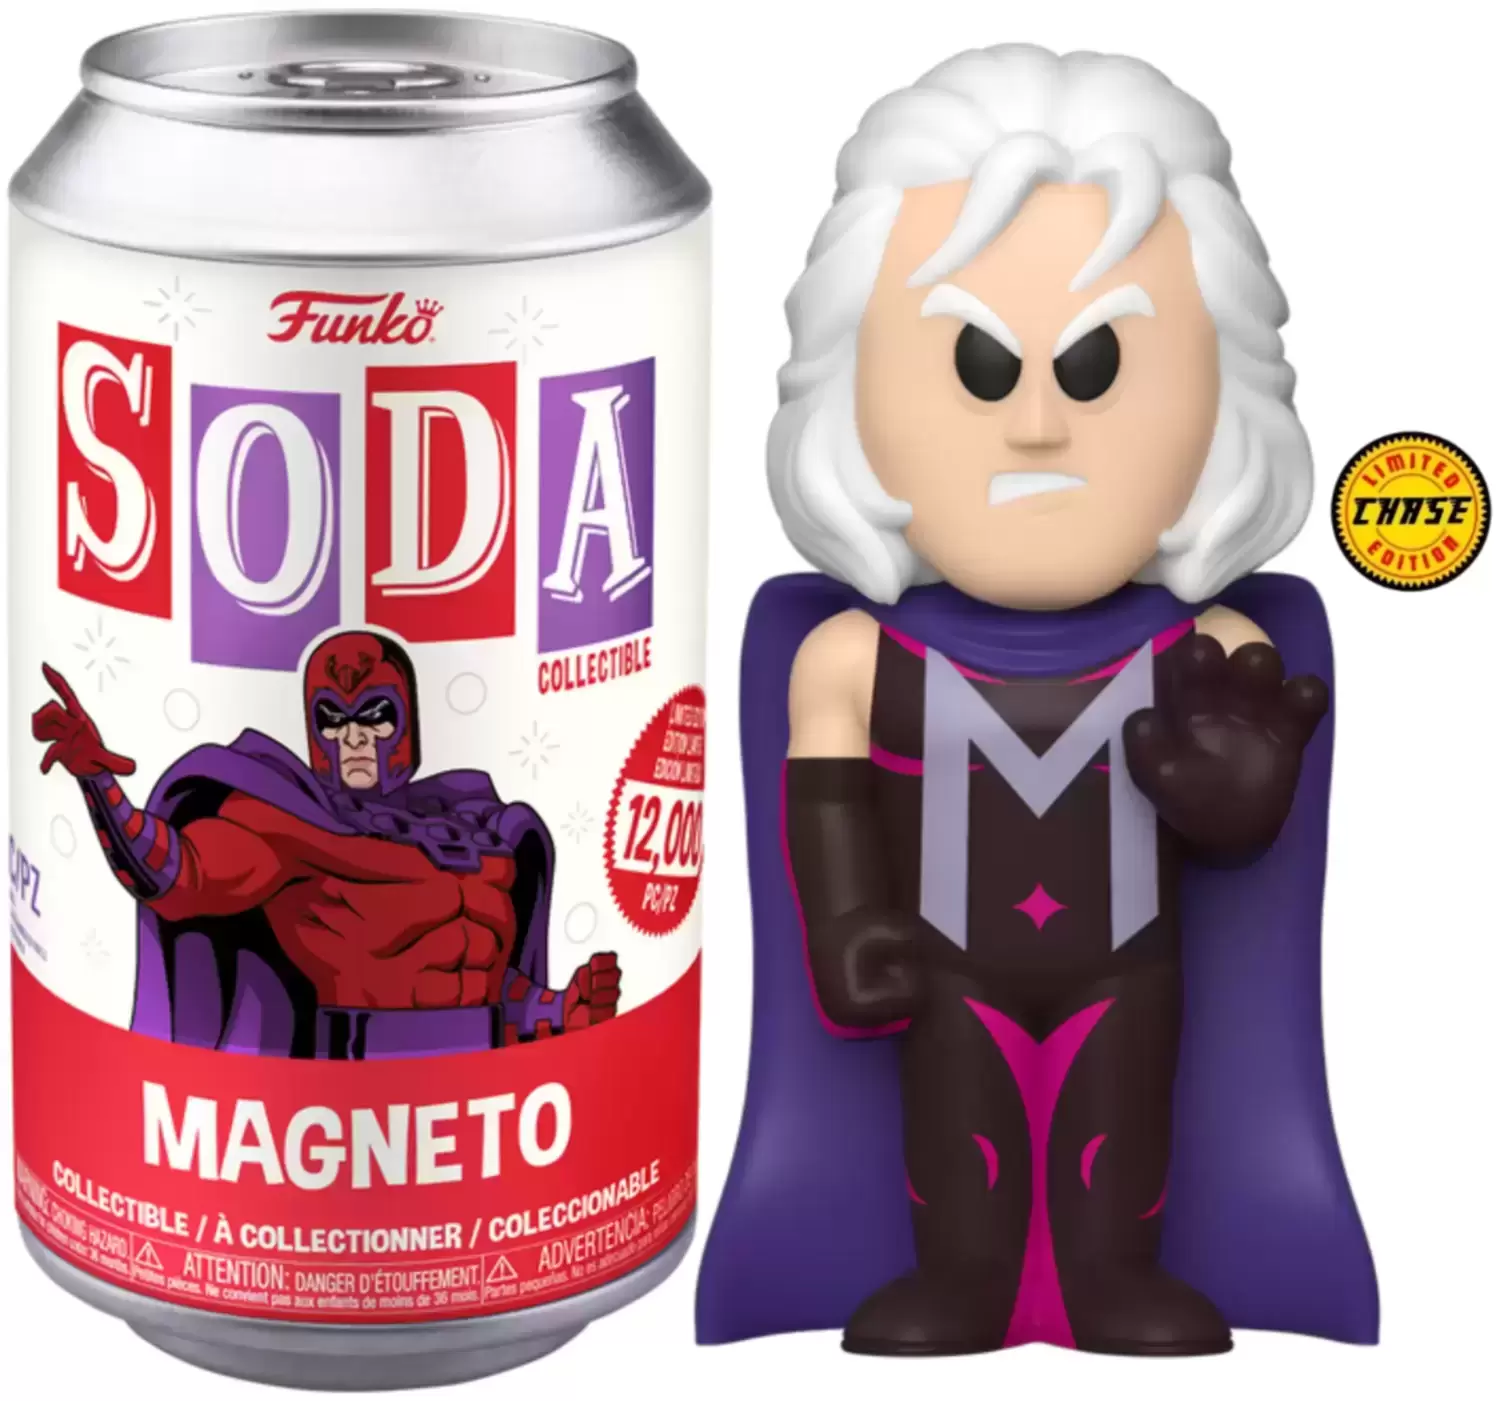 Vinyl Soda! - Magneto Chase